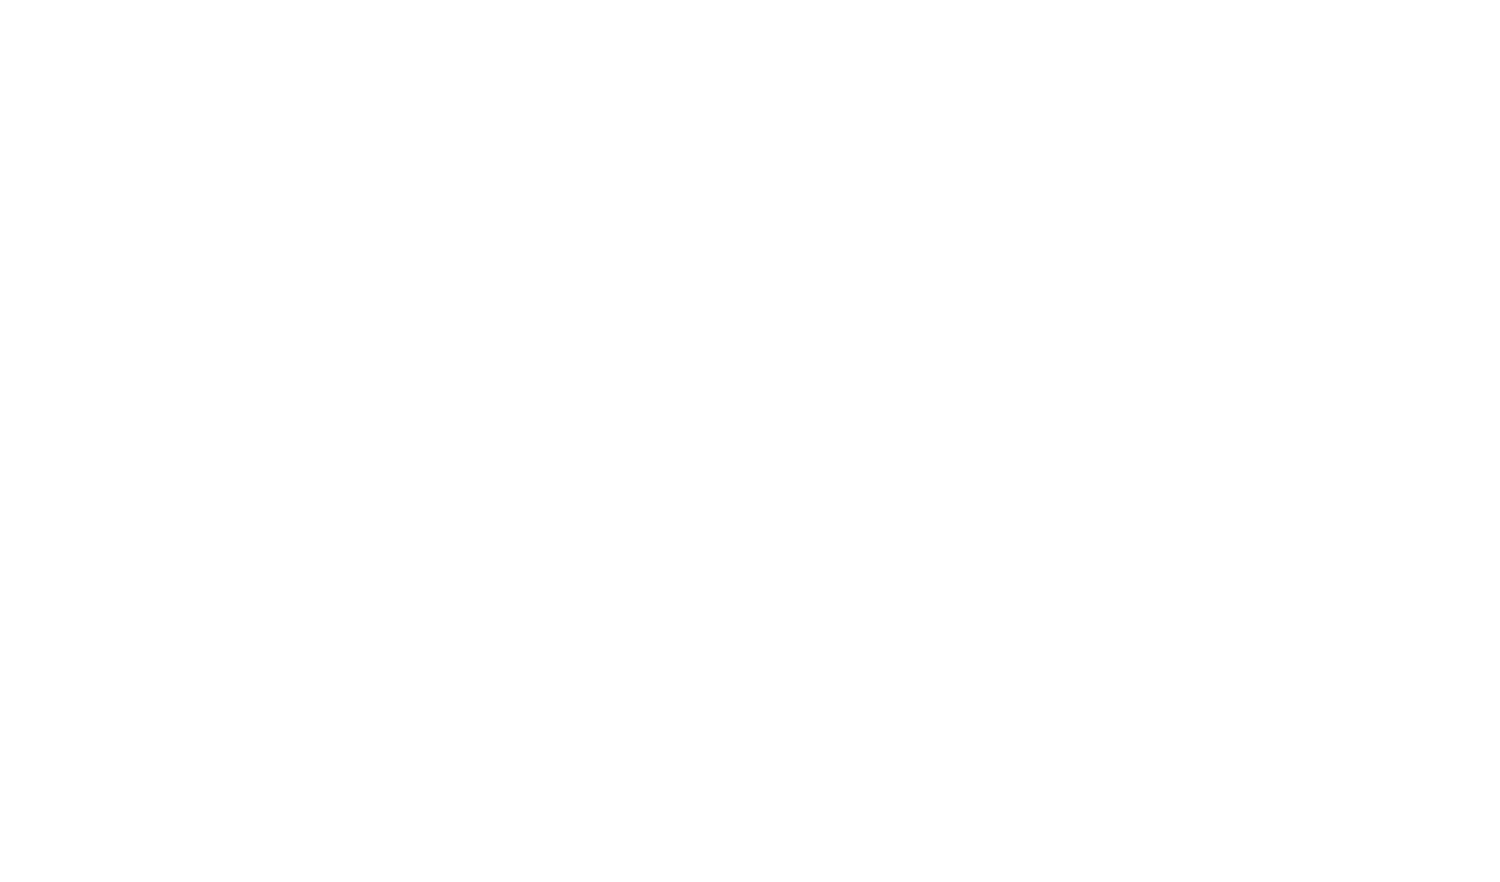 Knead Pizza